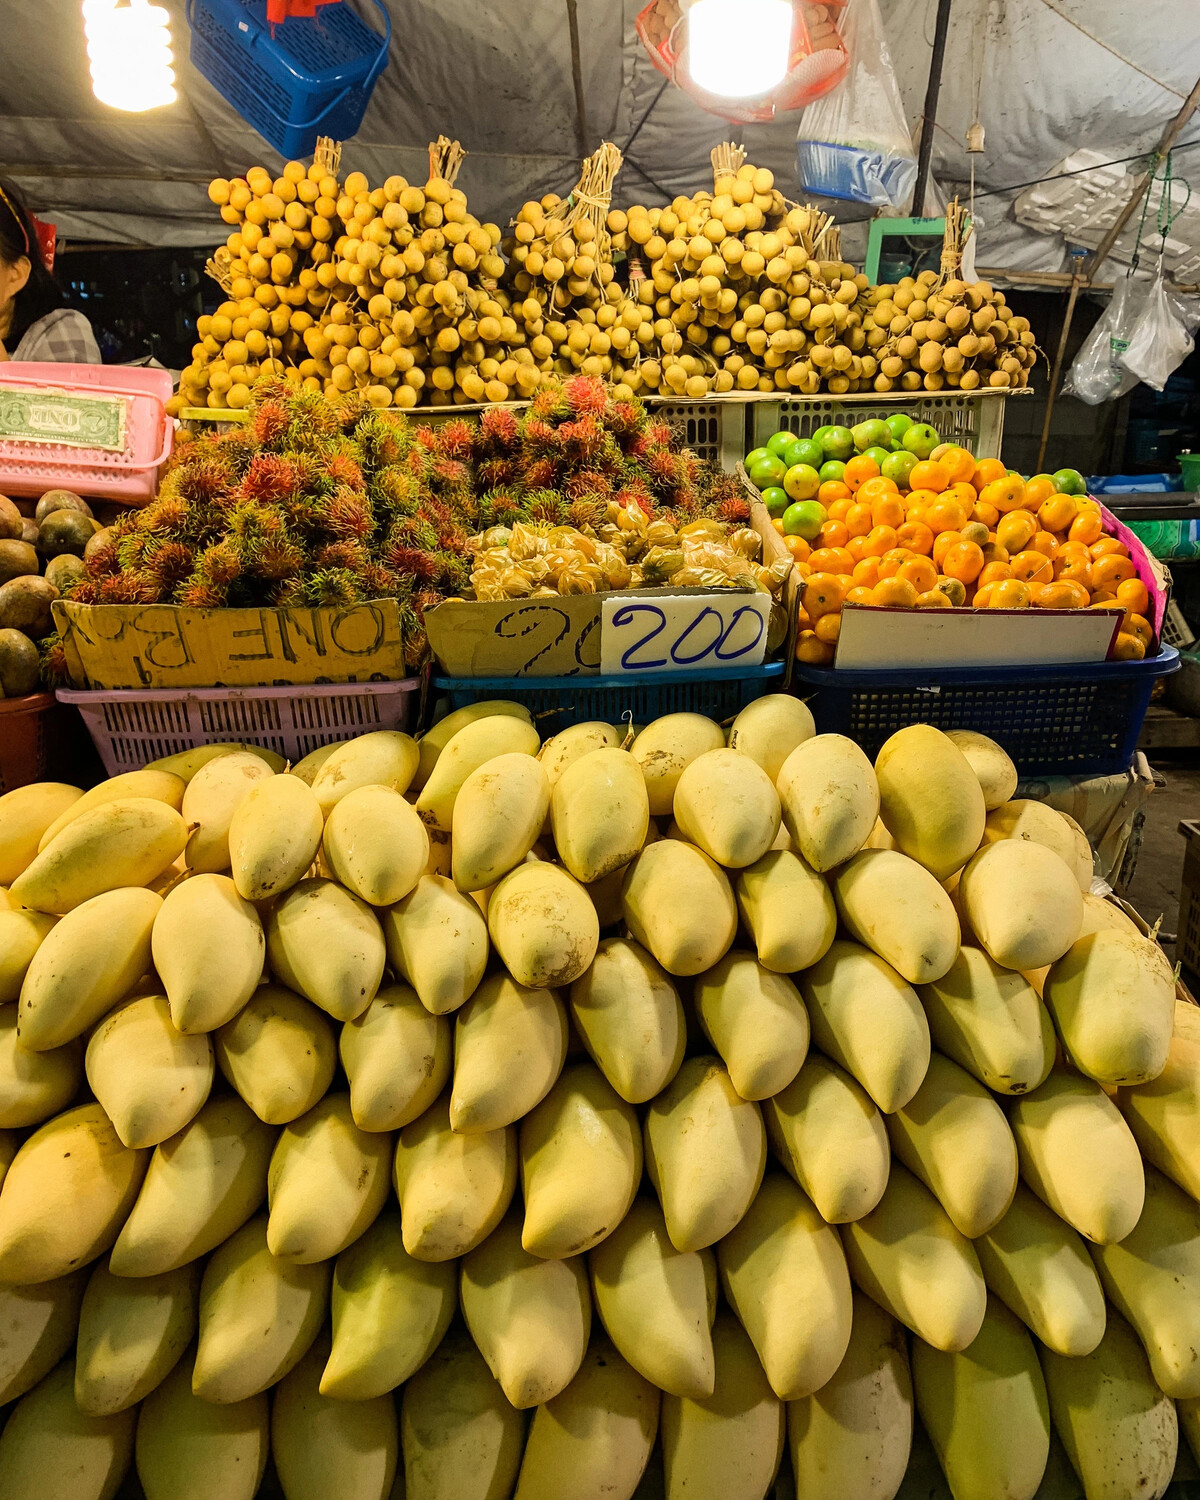 какой фрукт нельзя вывозить из тайланда из за запаха